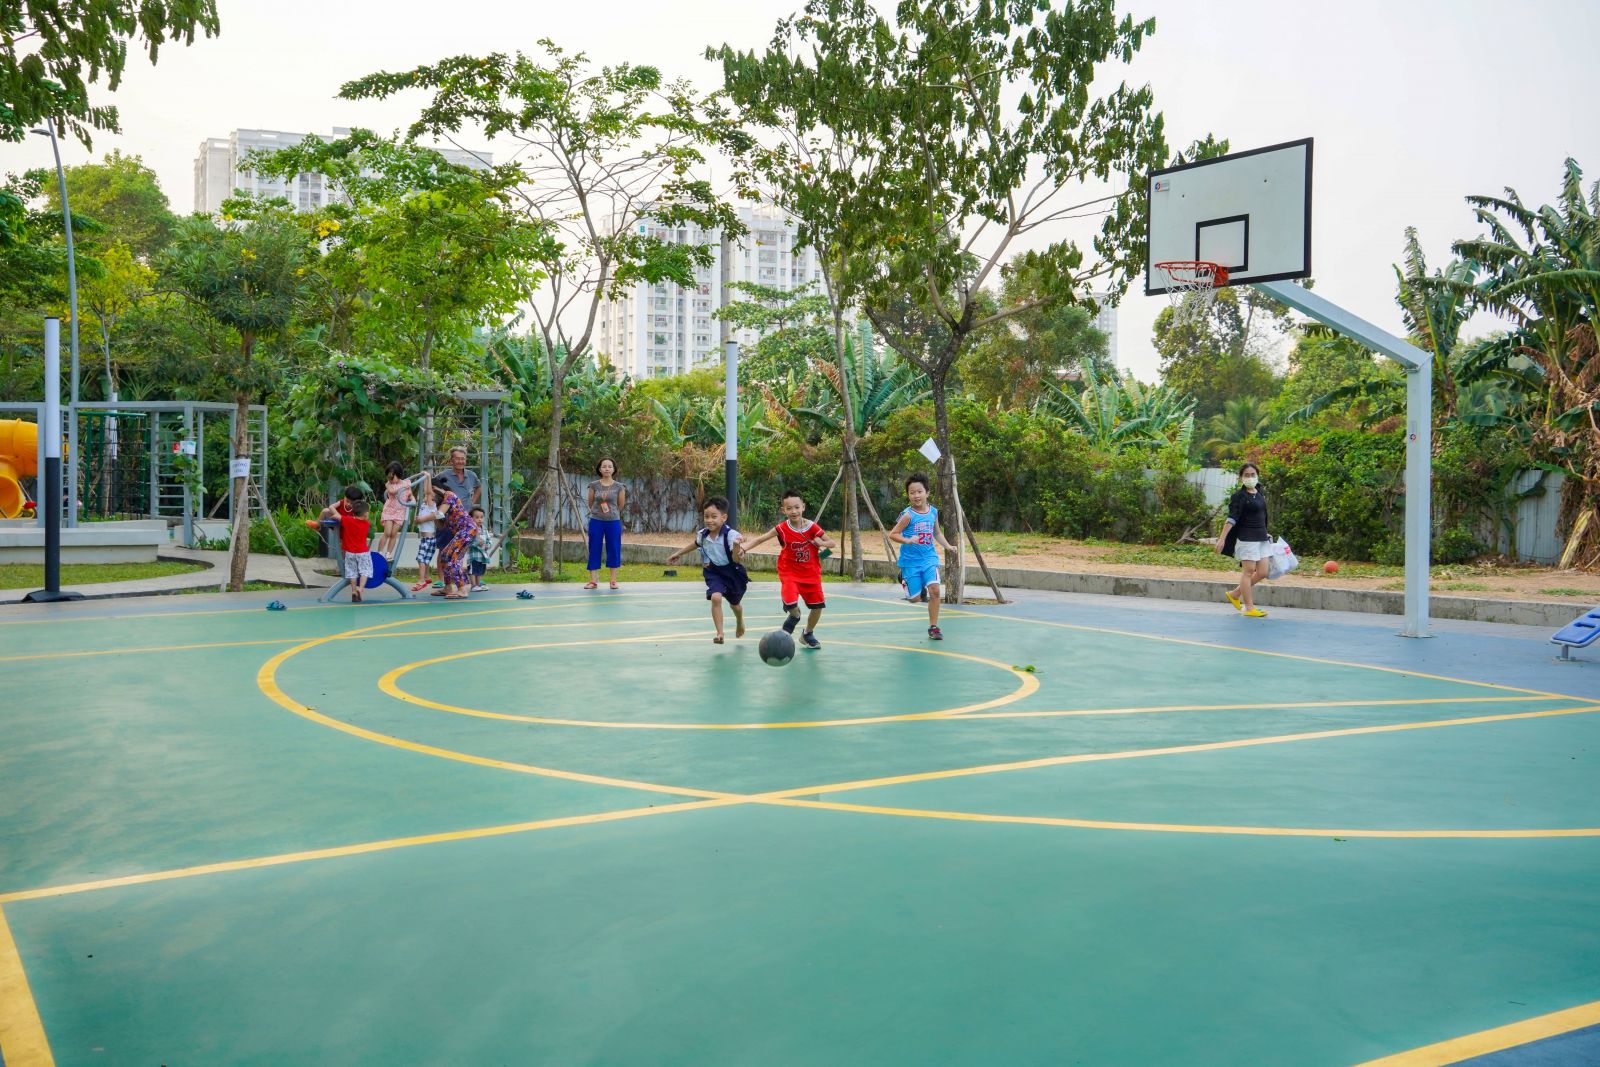 Trẻ em thoải mái vận động phát triển thể chất trong không gian rộng rãi và ngập tràn cây xanh tại dự án Lavita Charm (phường Trường Thọ).